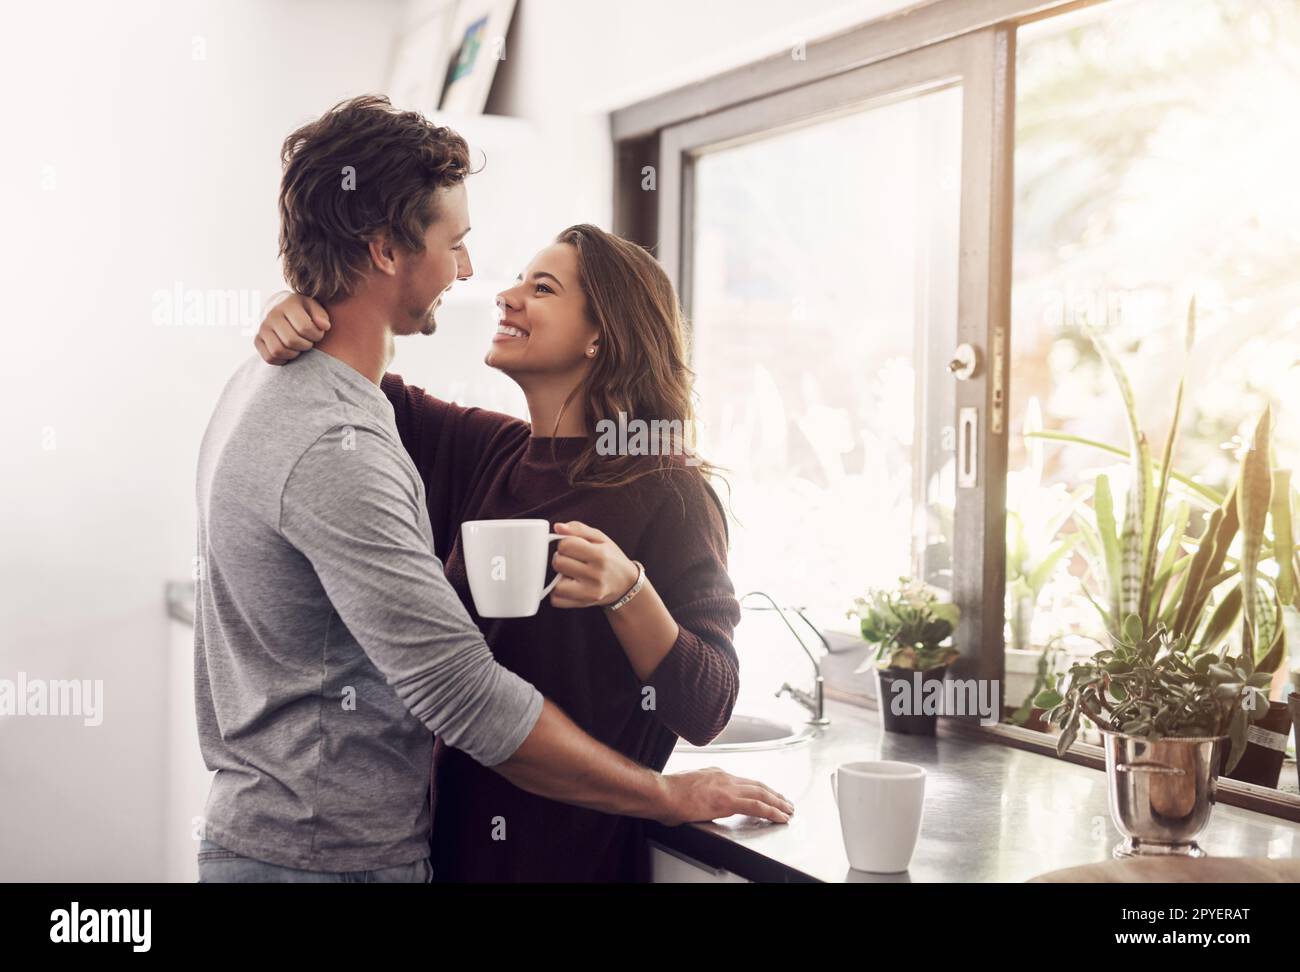 La mattina insieme rende la giornata ancora migliore. una giovane coppia affettuosa che ha una pausa caffè a casa. Foto Stock